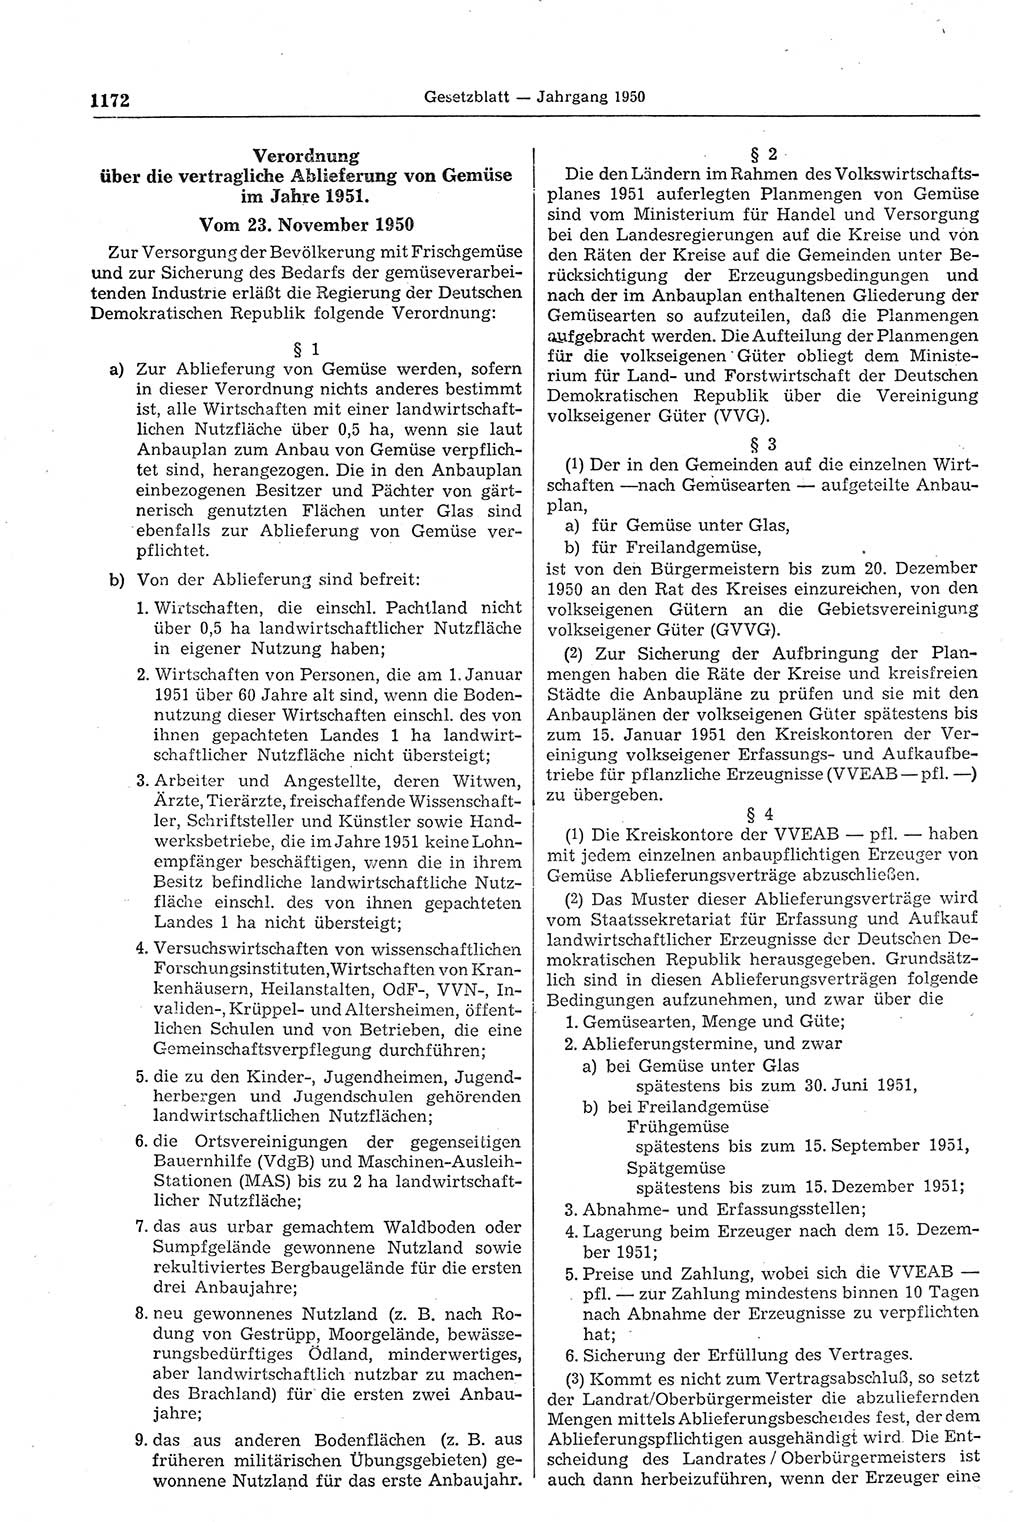 Gesetzblatt (GBl.) der Deutschen Demokratischen Republik (DDR) 1950, Seite 1172 (GBl. DDR 1950, S. 1172)